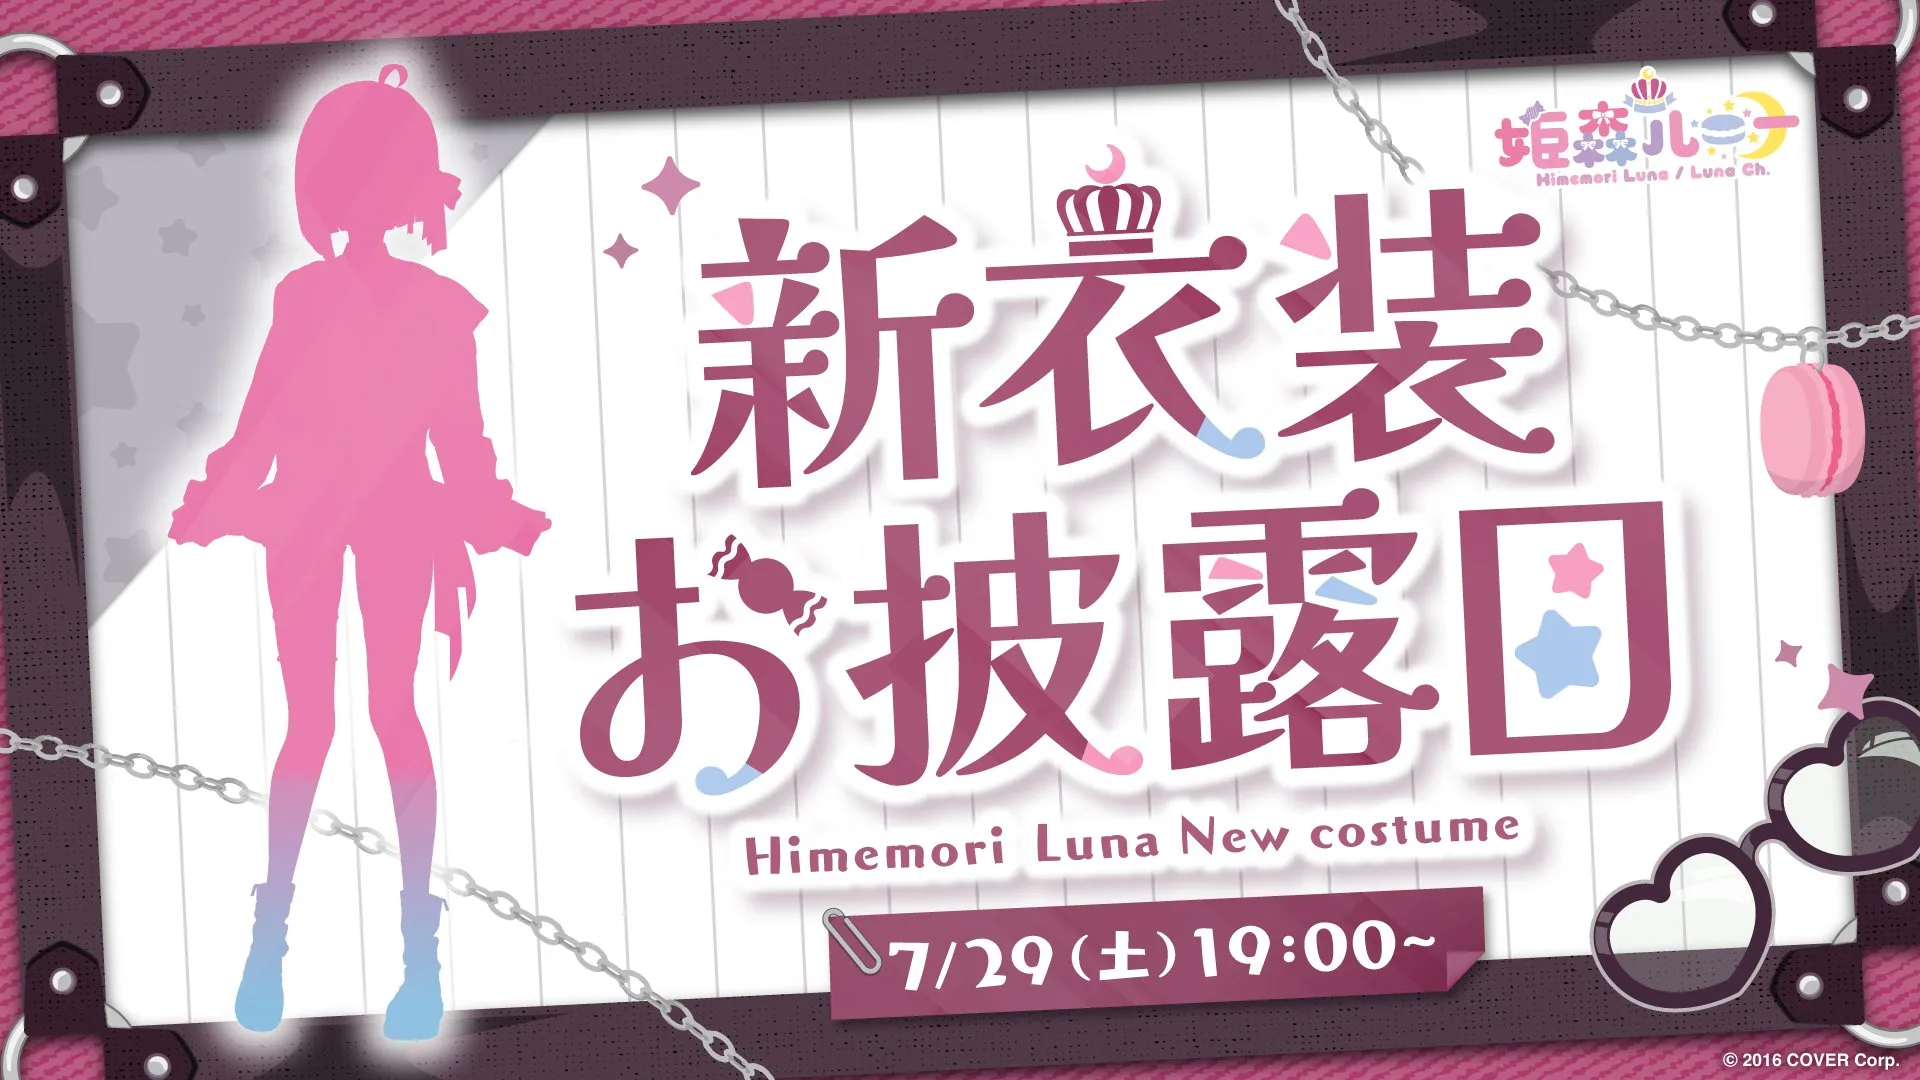 【7月29日(土)】姫森ルーナが新衣装お披露目配信を19時から開始 